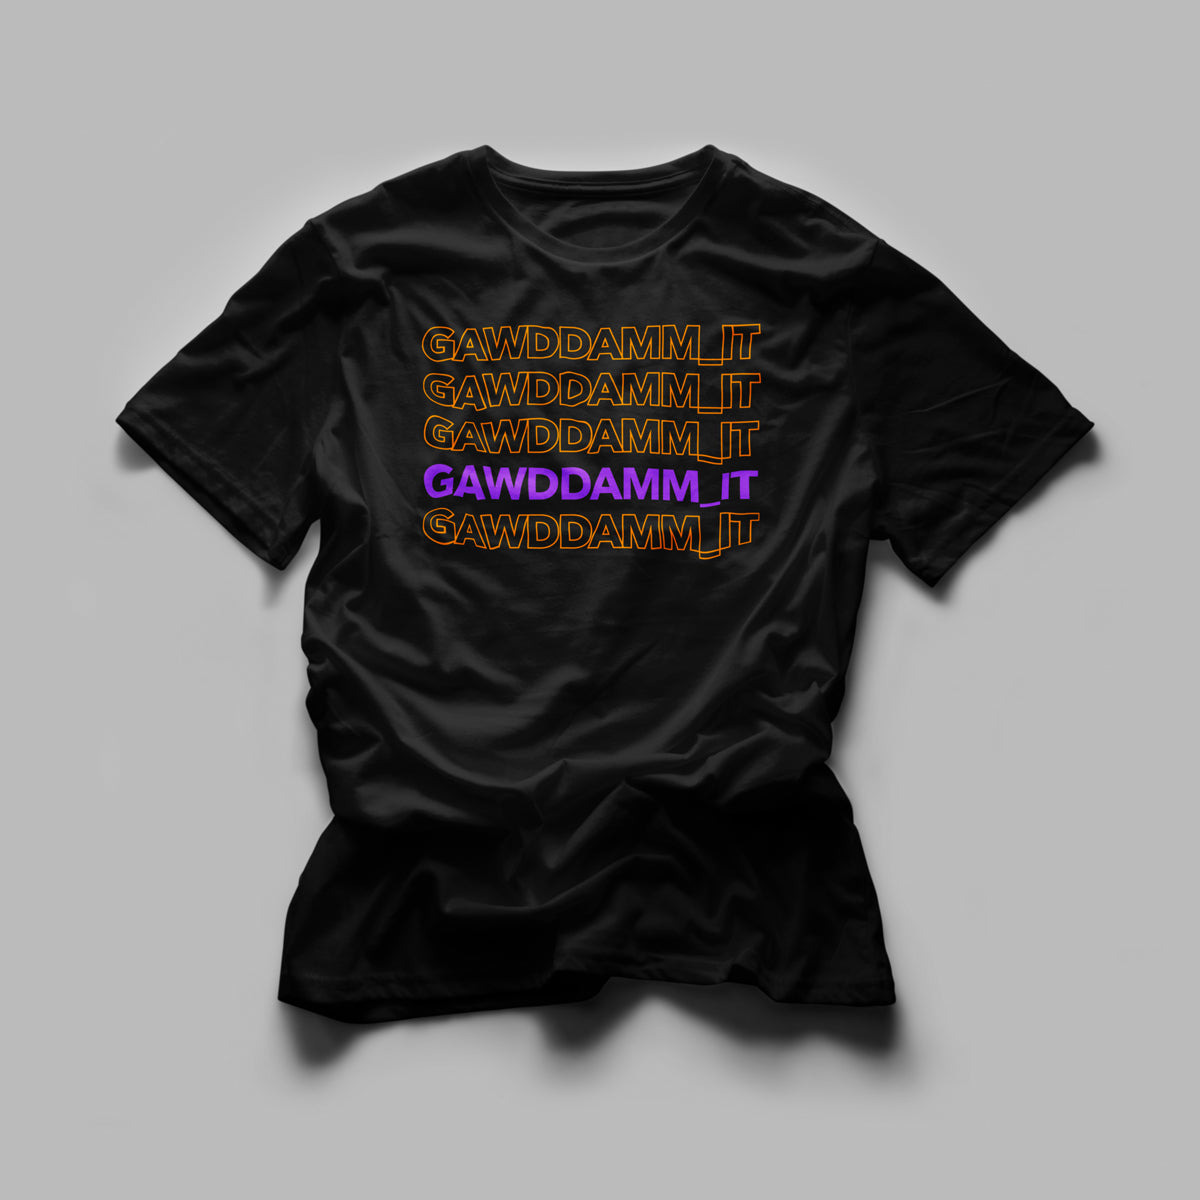 Gawddamm_it - Row Tshirt